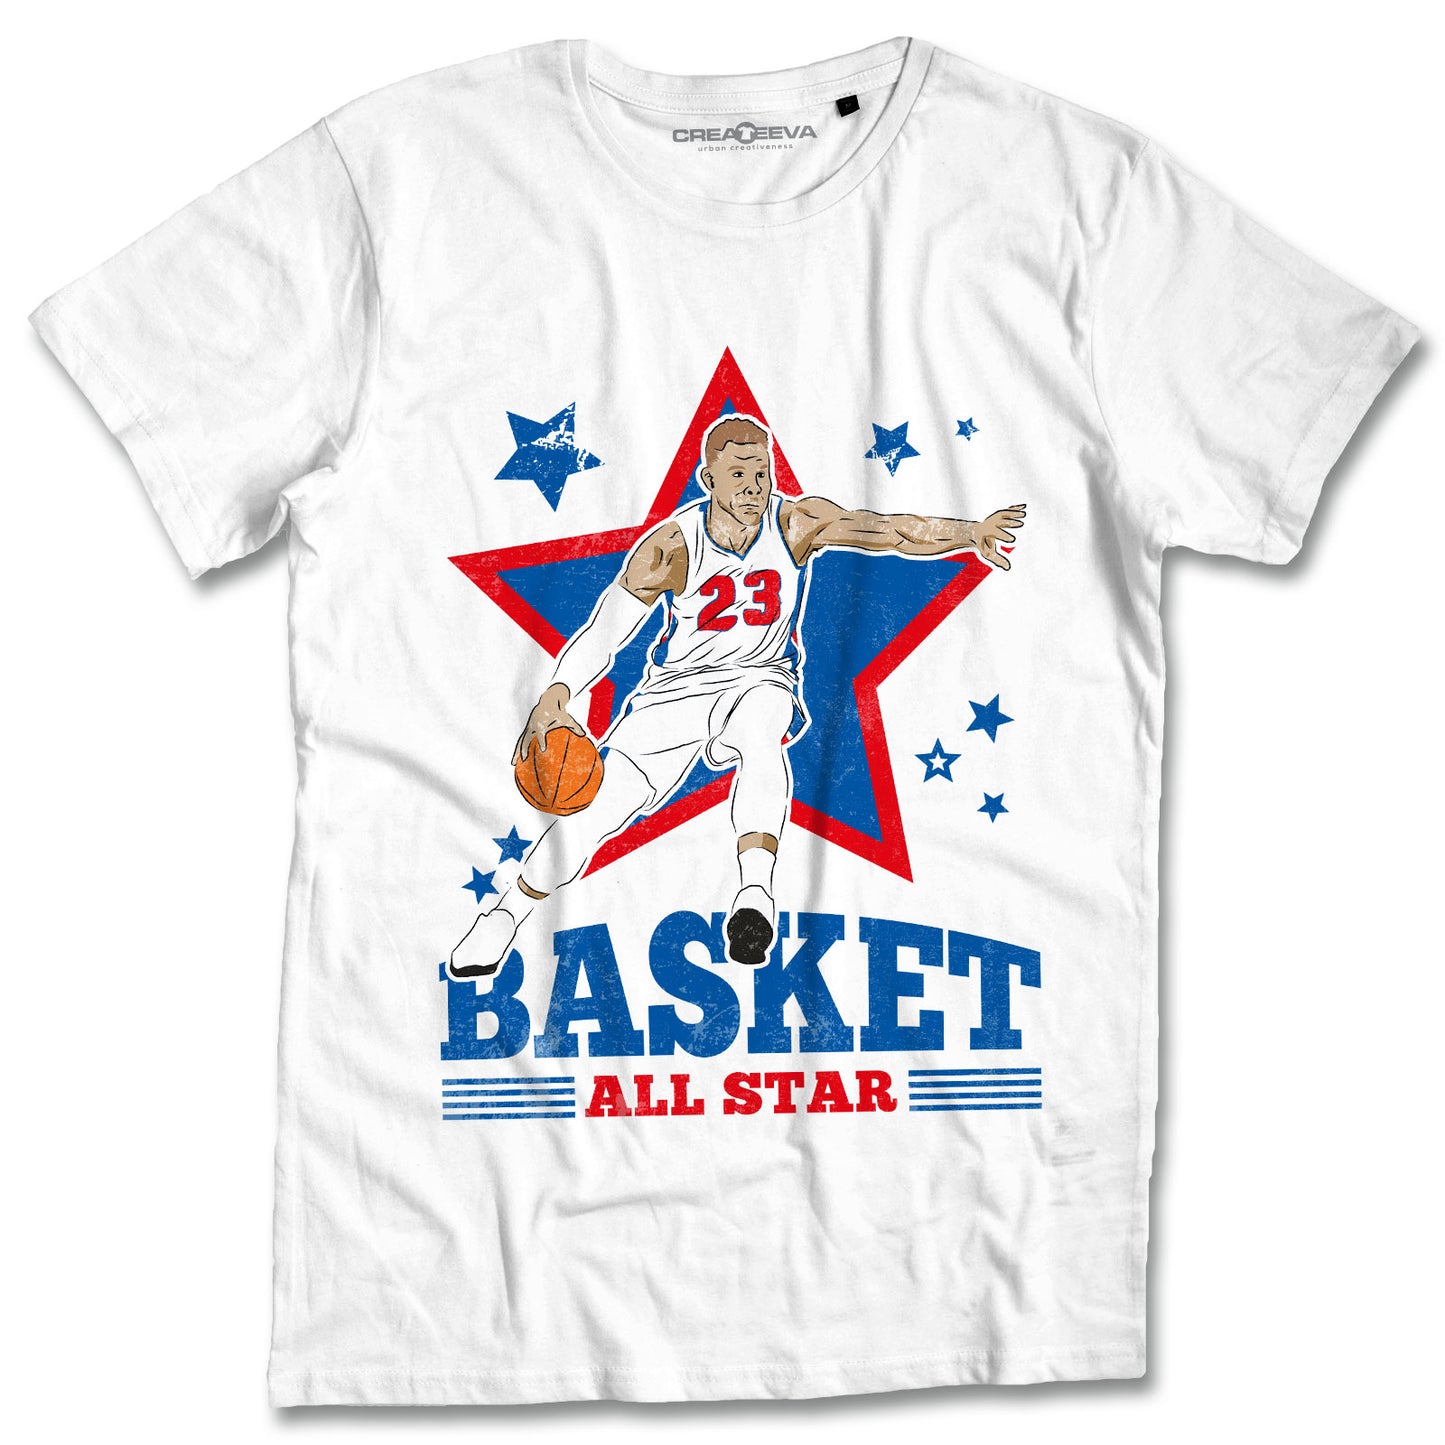 T-shirt Basket Maglietta Campioni Pallacanestro Maglia All Star